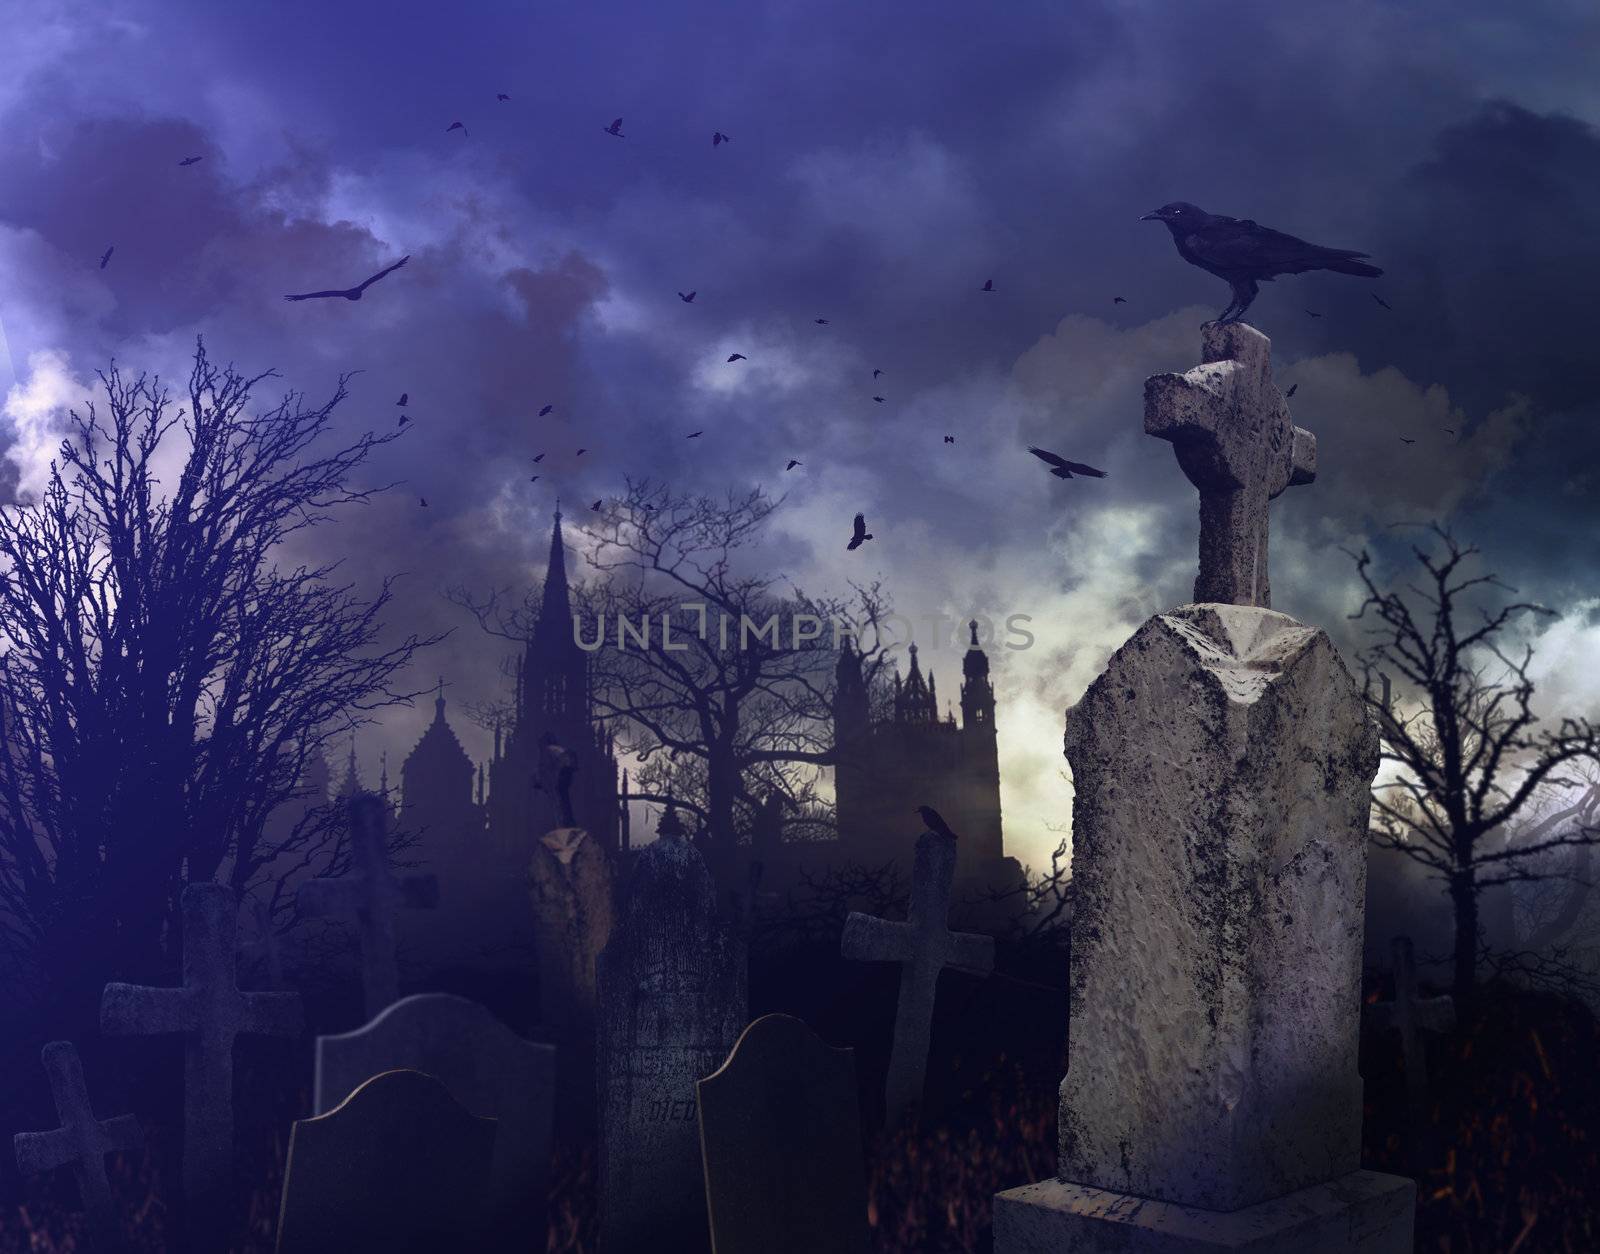 Halloween night scene in a spooky graveyard